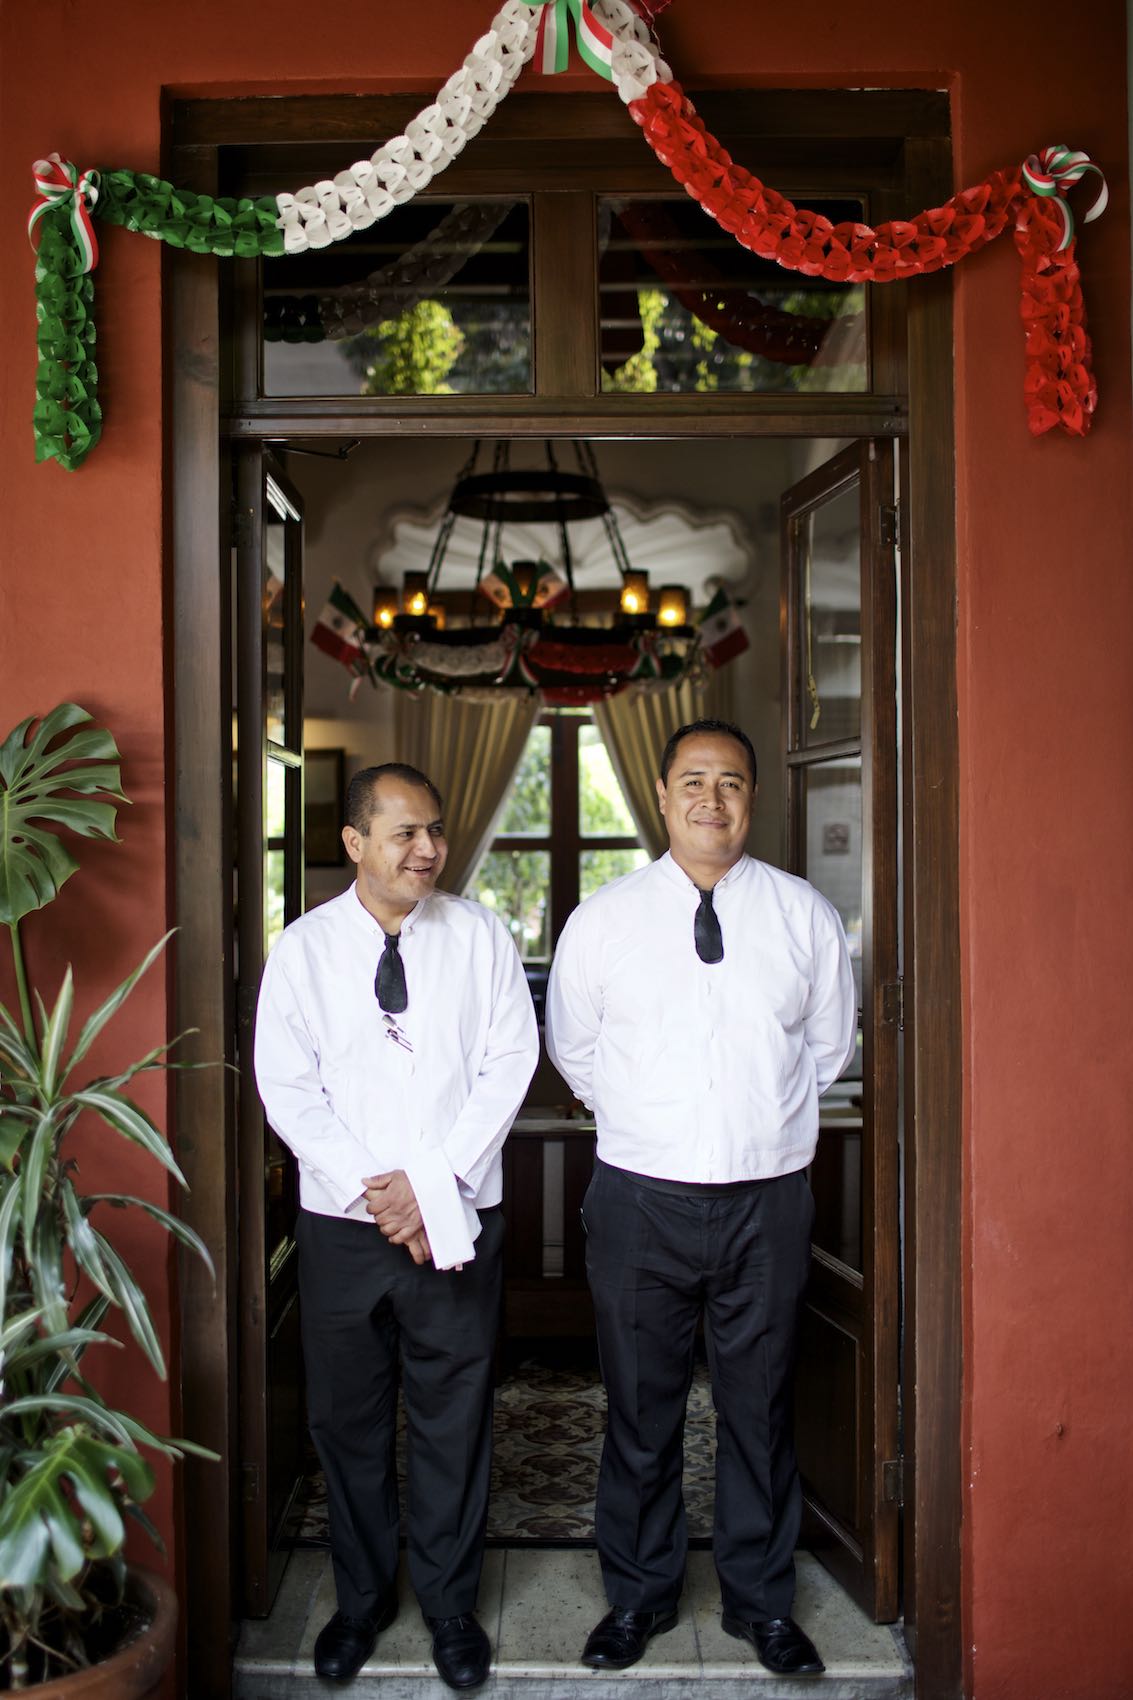 Jody Horton Photography - Servers in uniform standing in the doorway of a restaurant 